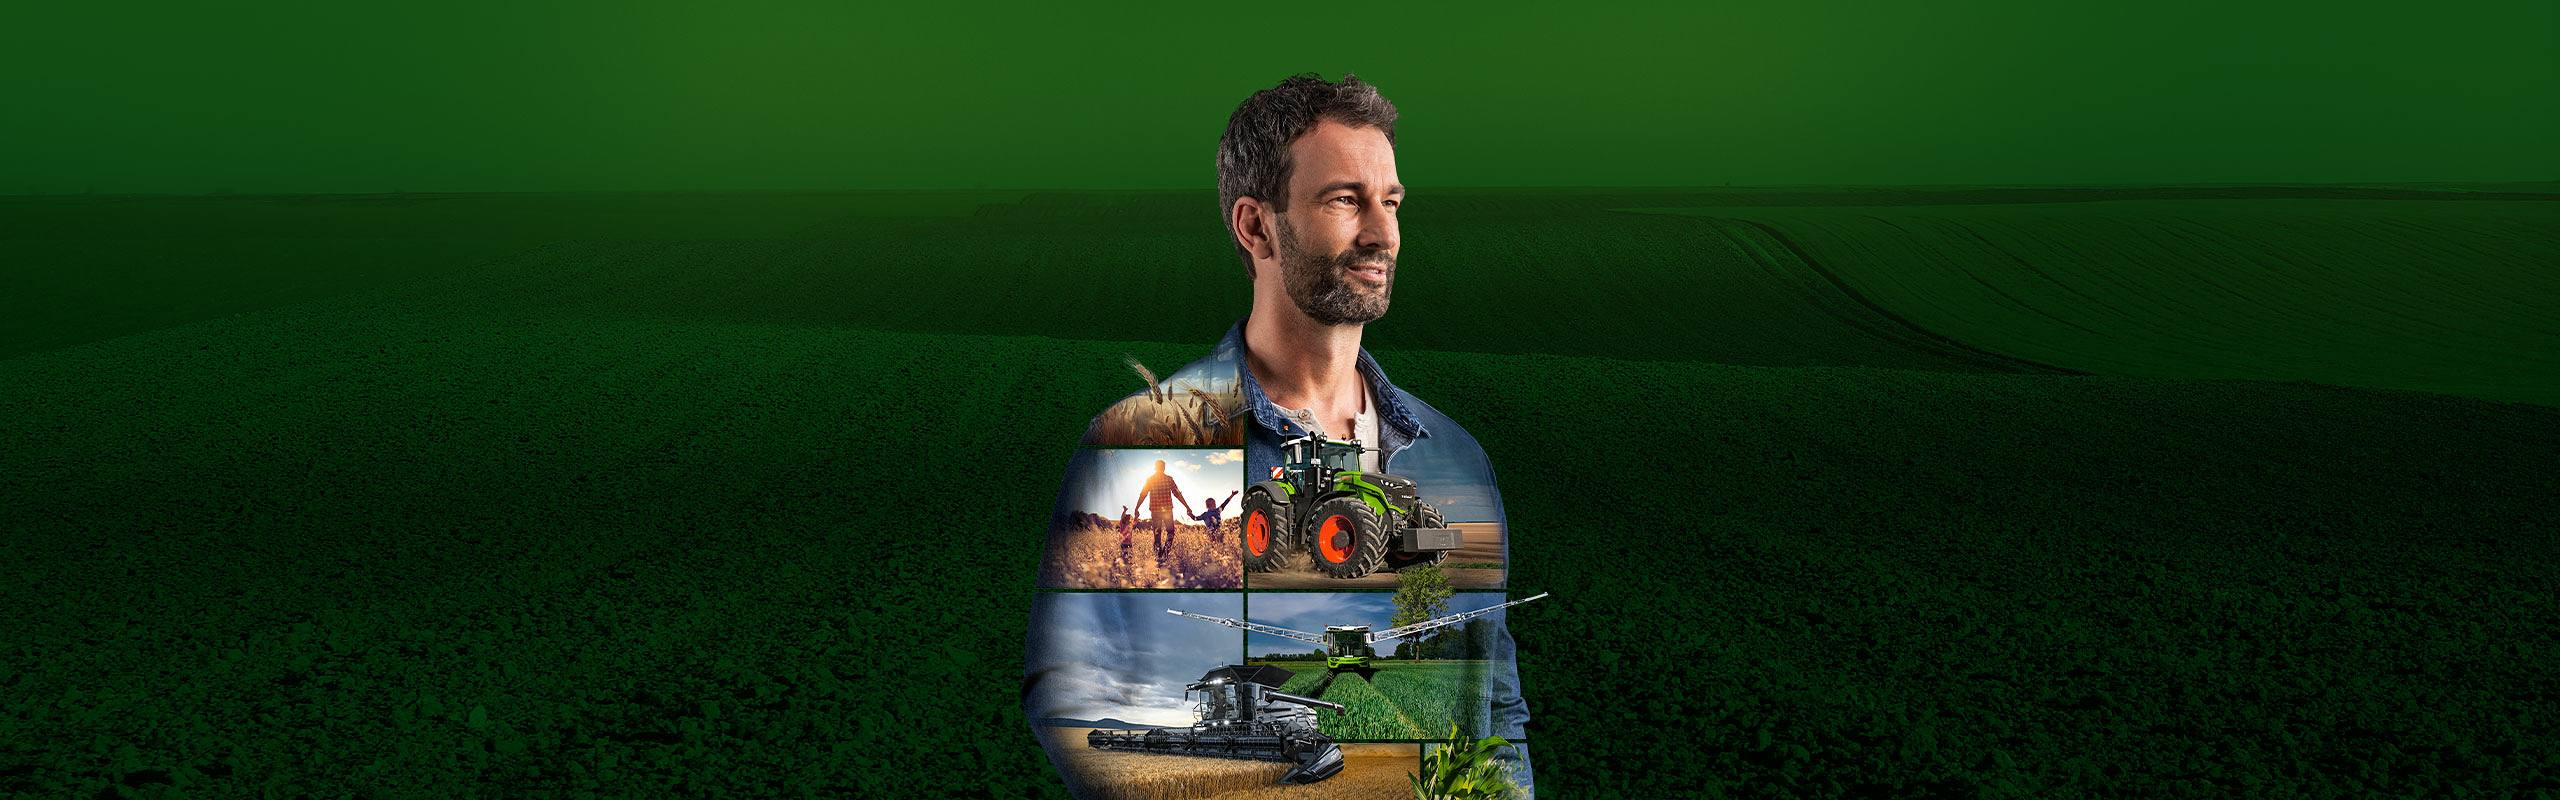 Priešais žalią foną stovi ūkininkas ir motyvuojančiu žvilgsniu žvelgia į ateitį. Ant viršutinės jo kūno dalies pavaizduoti „Fendt“ produktai.